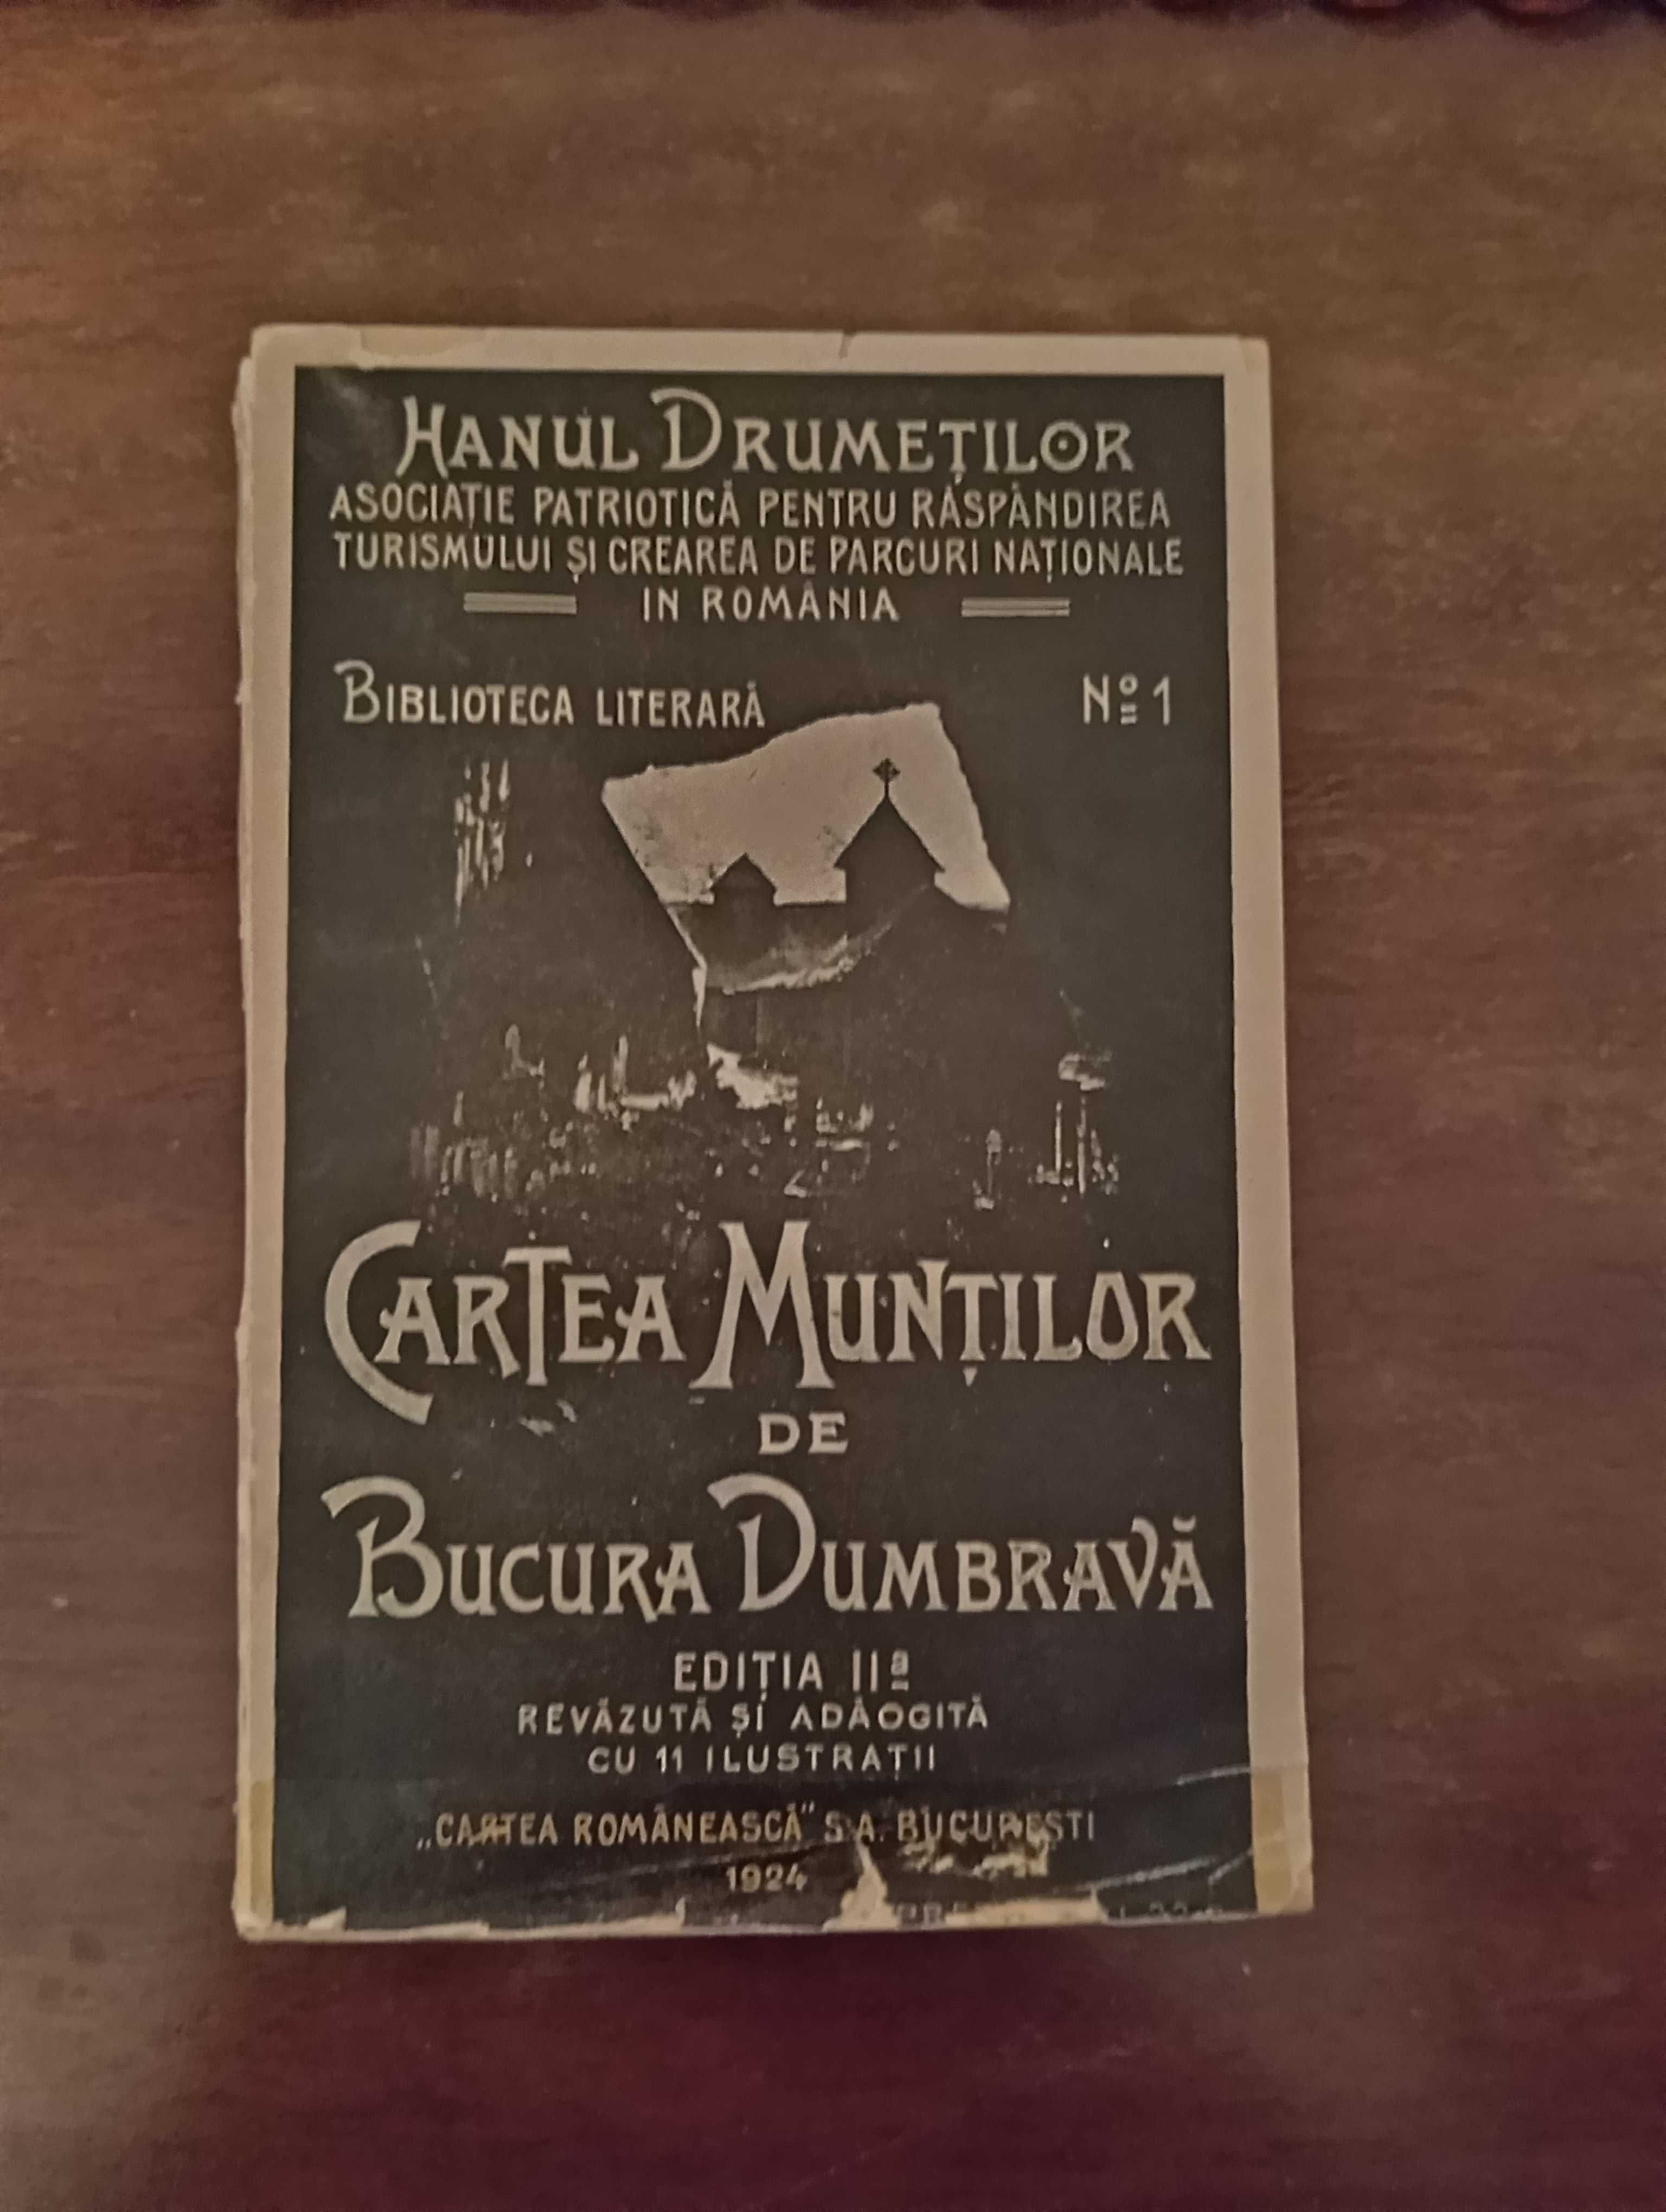 Bucura Dumbrava - Cartea muntilor  - 2 editii: 70 lei/fiecare carte